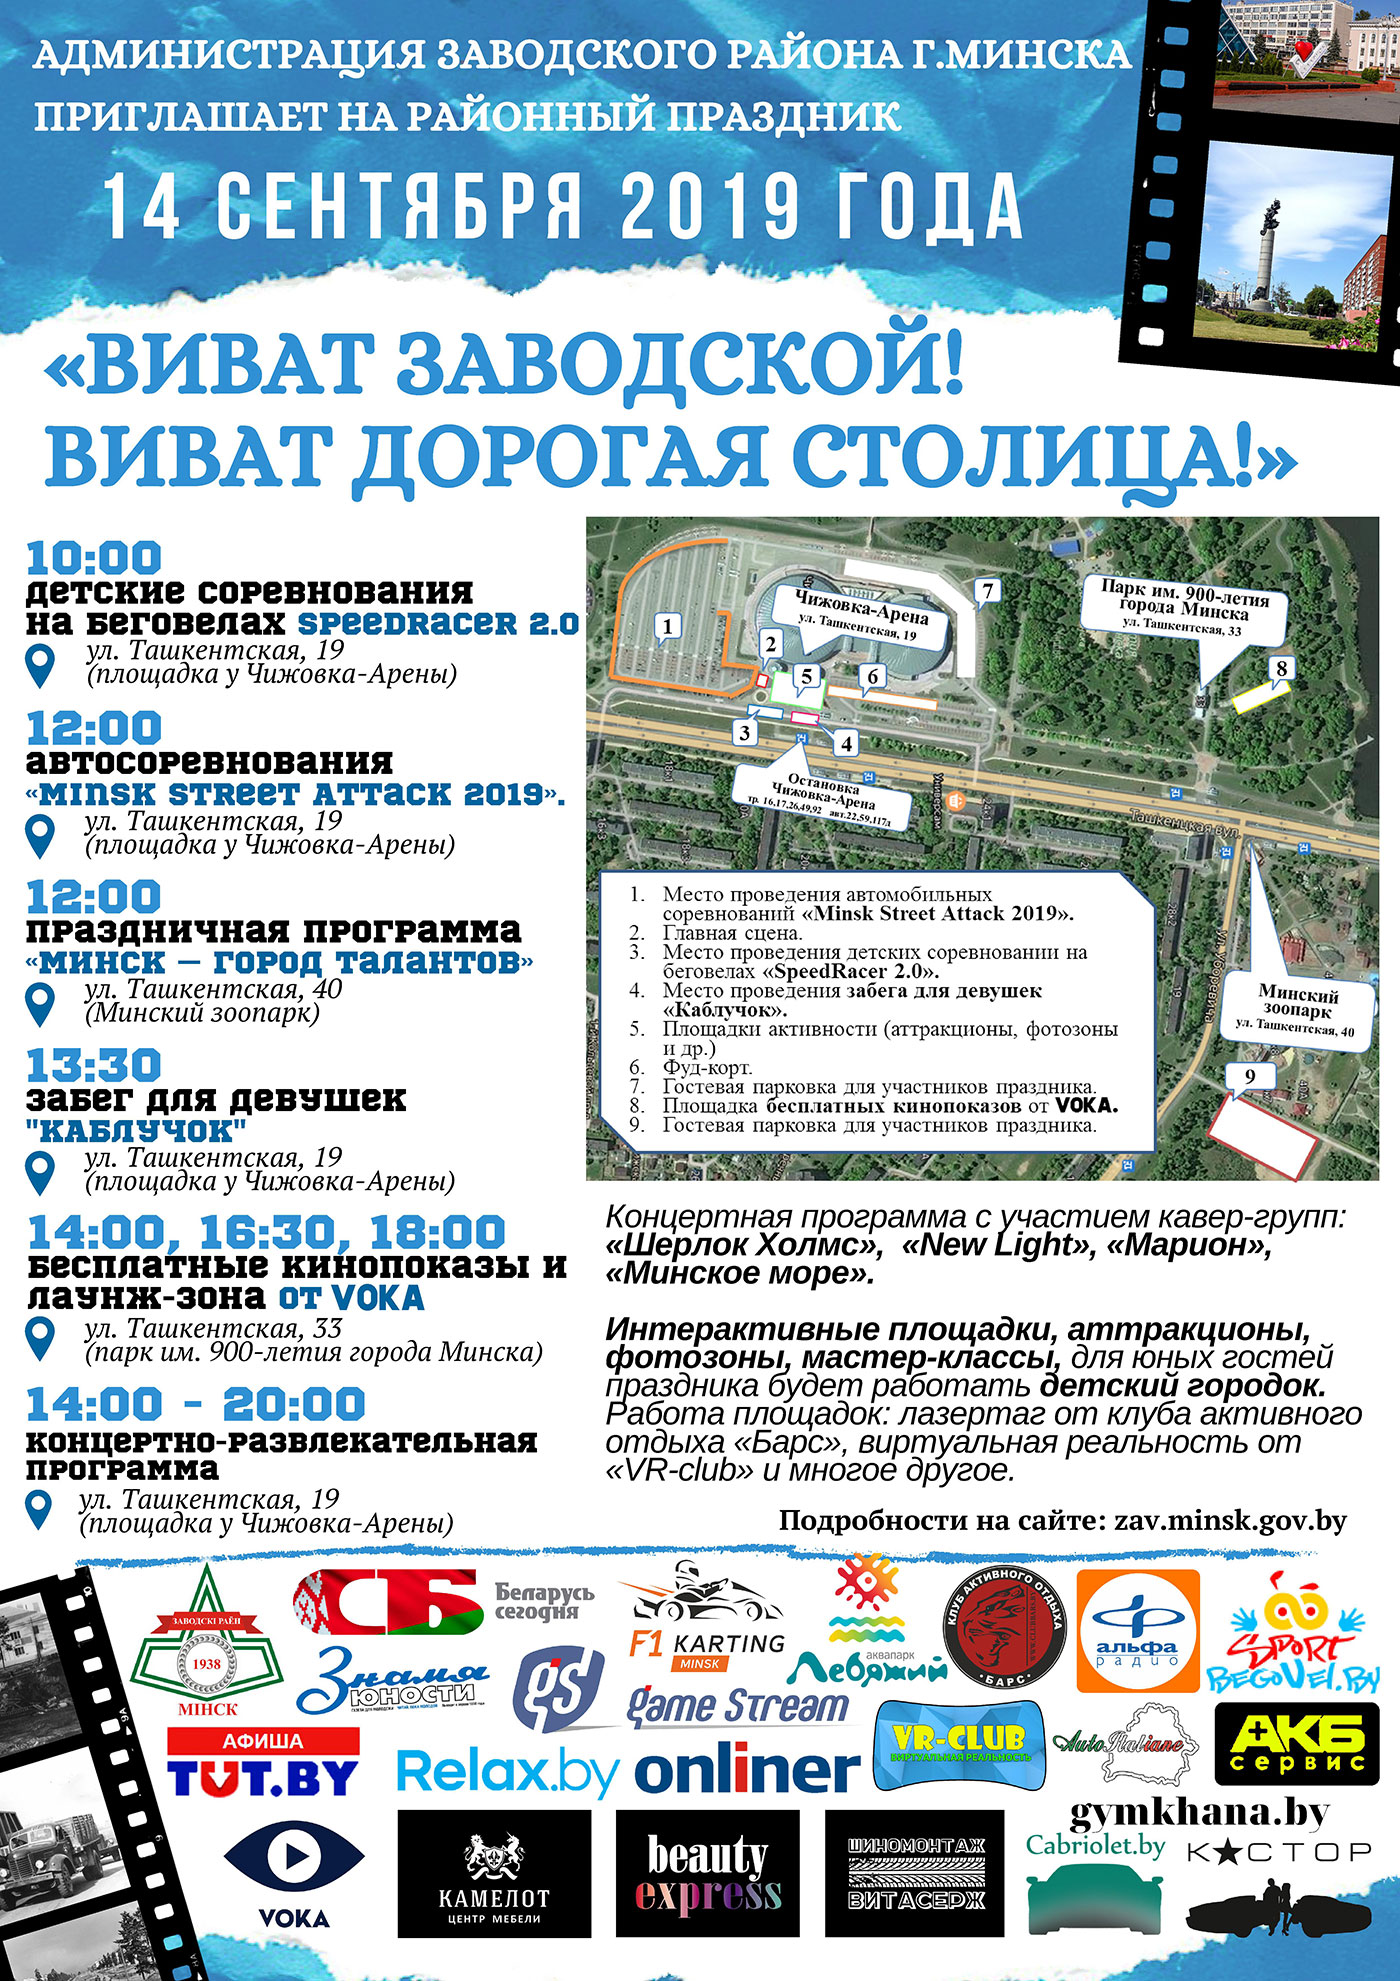 Программа празднования Дня города Минска в Заводском районе столицы!